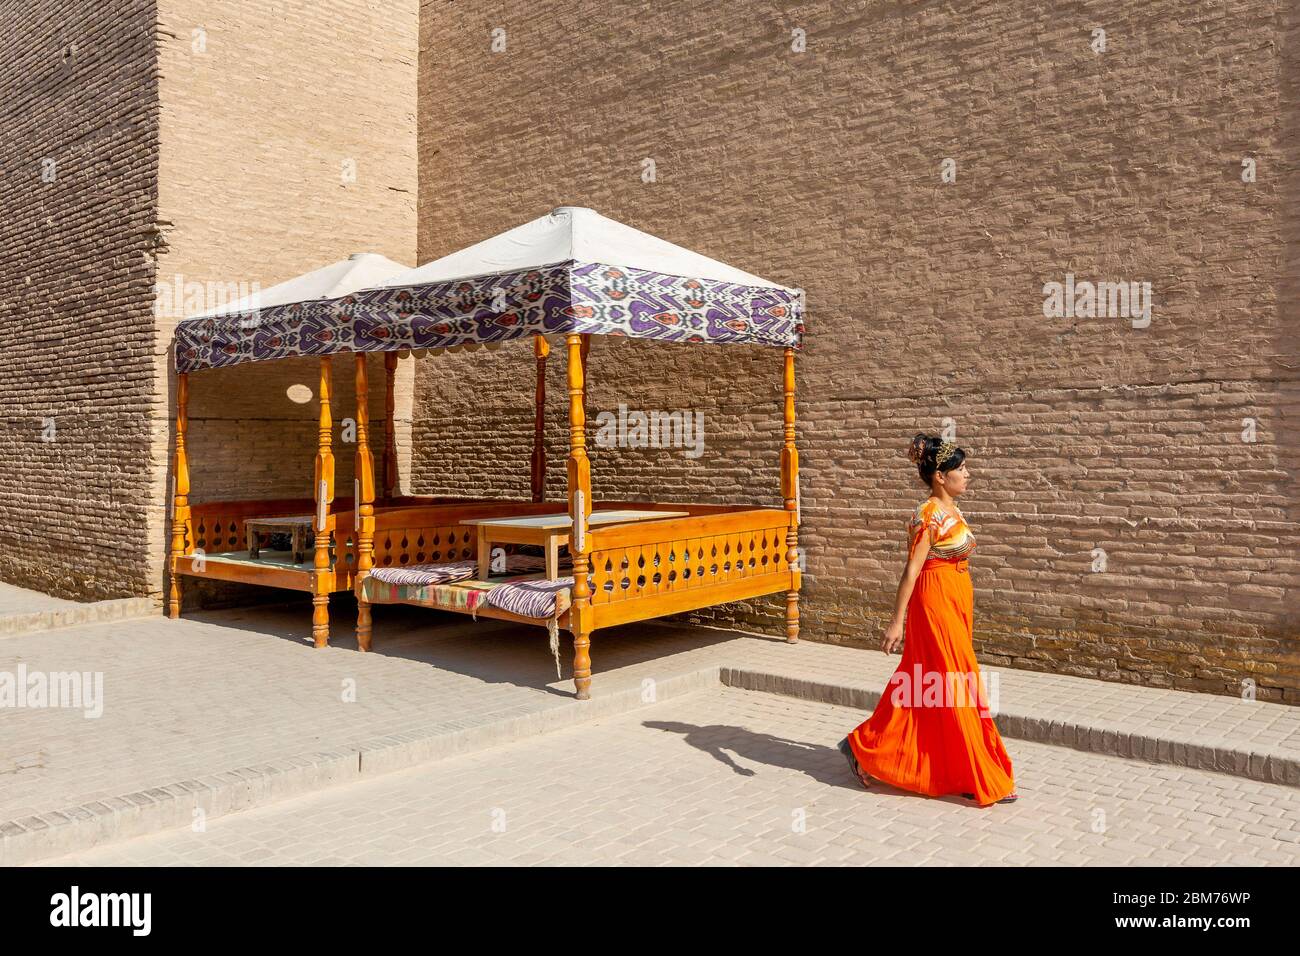 Altstadt, Chiva, Usbekistan Stock Photo